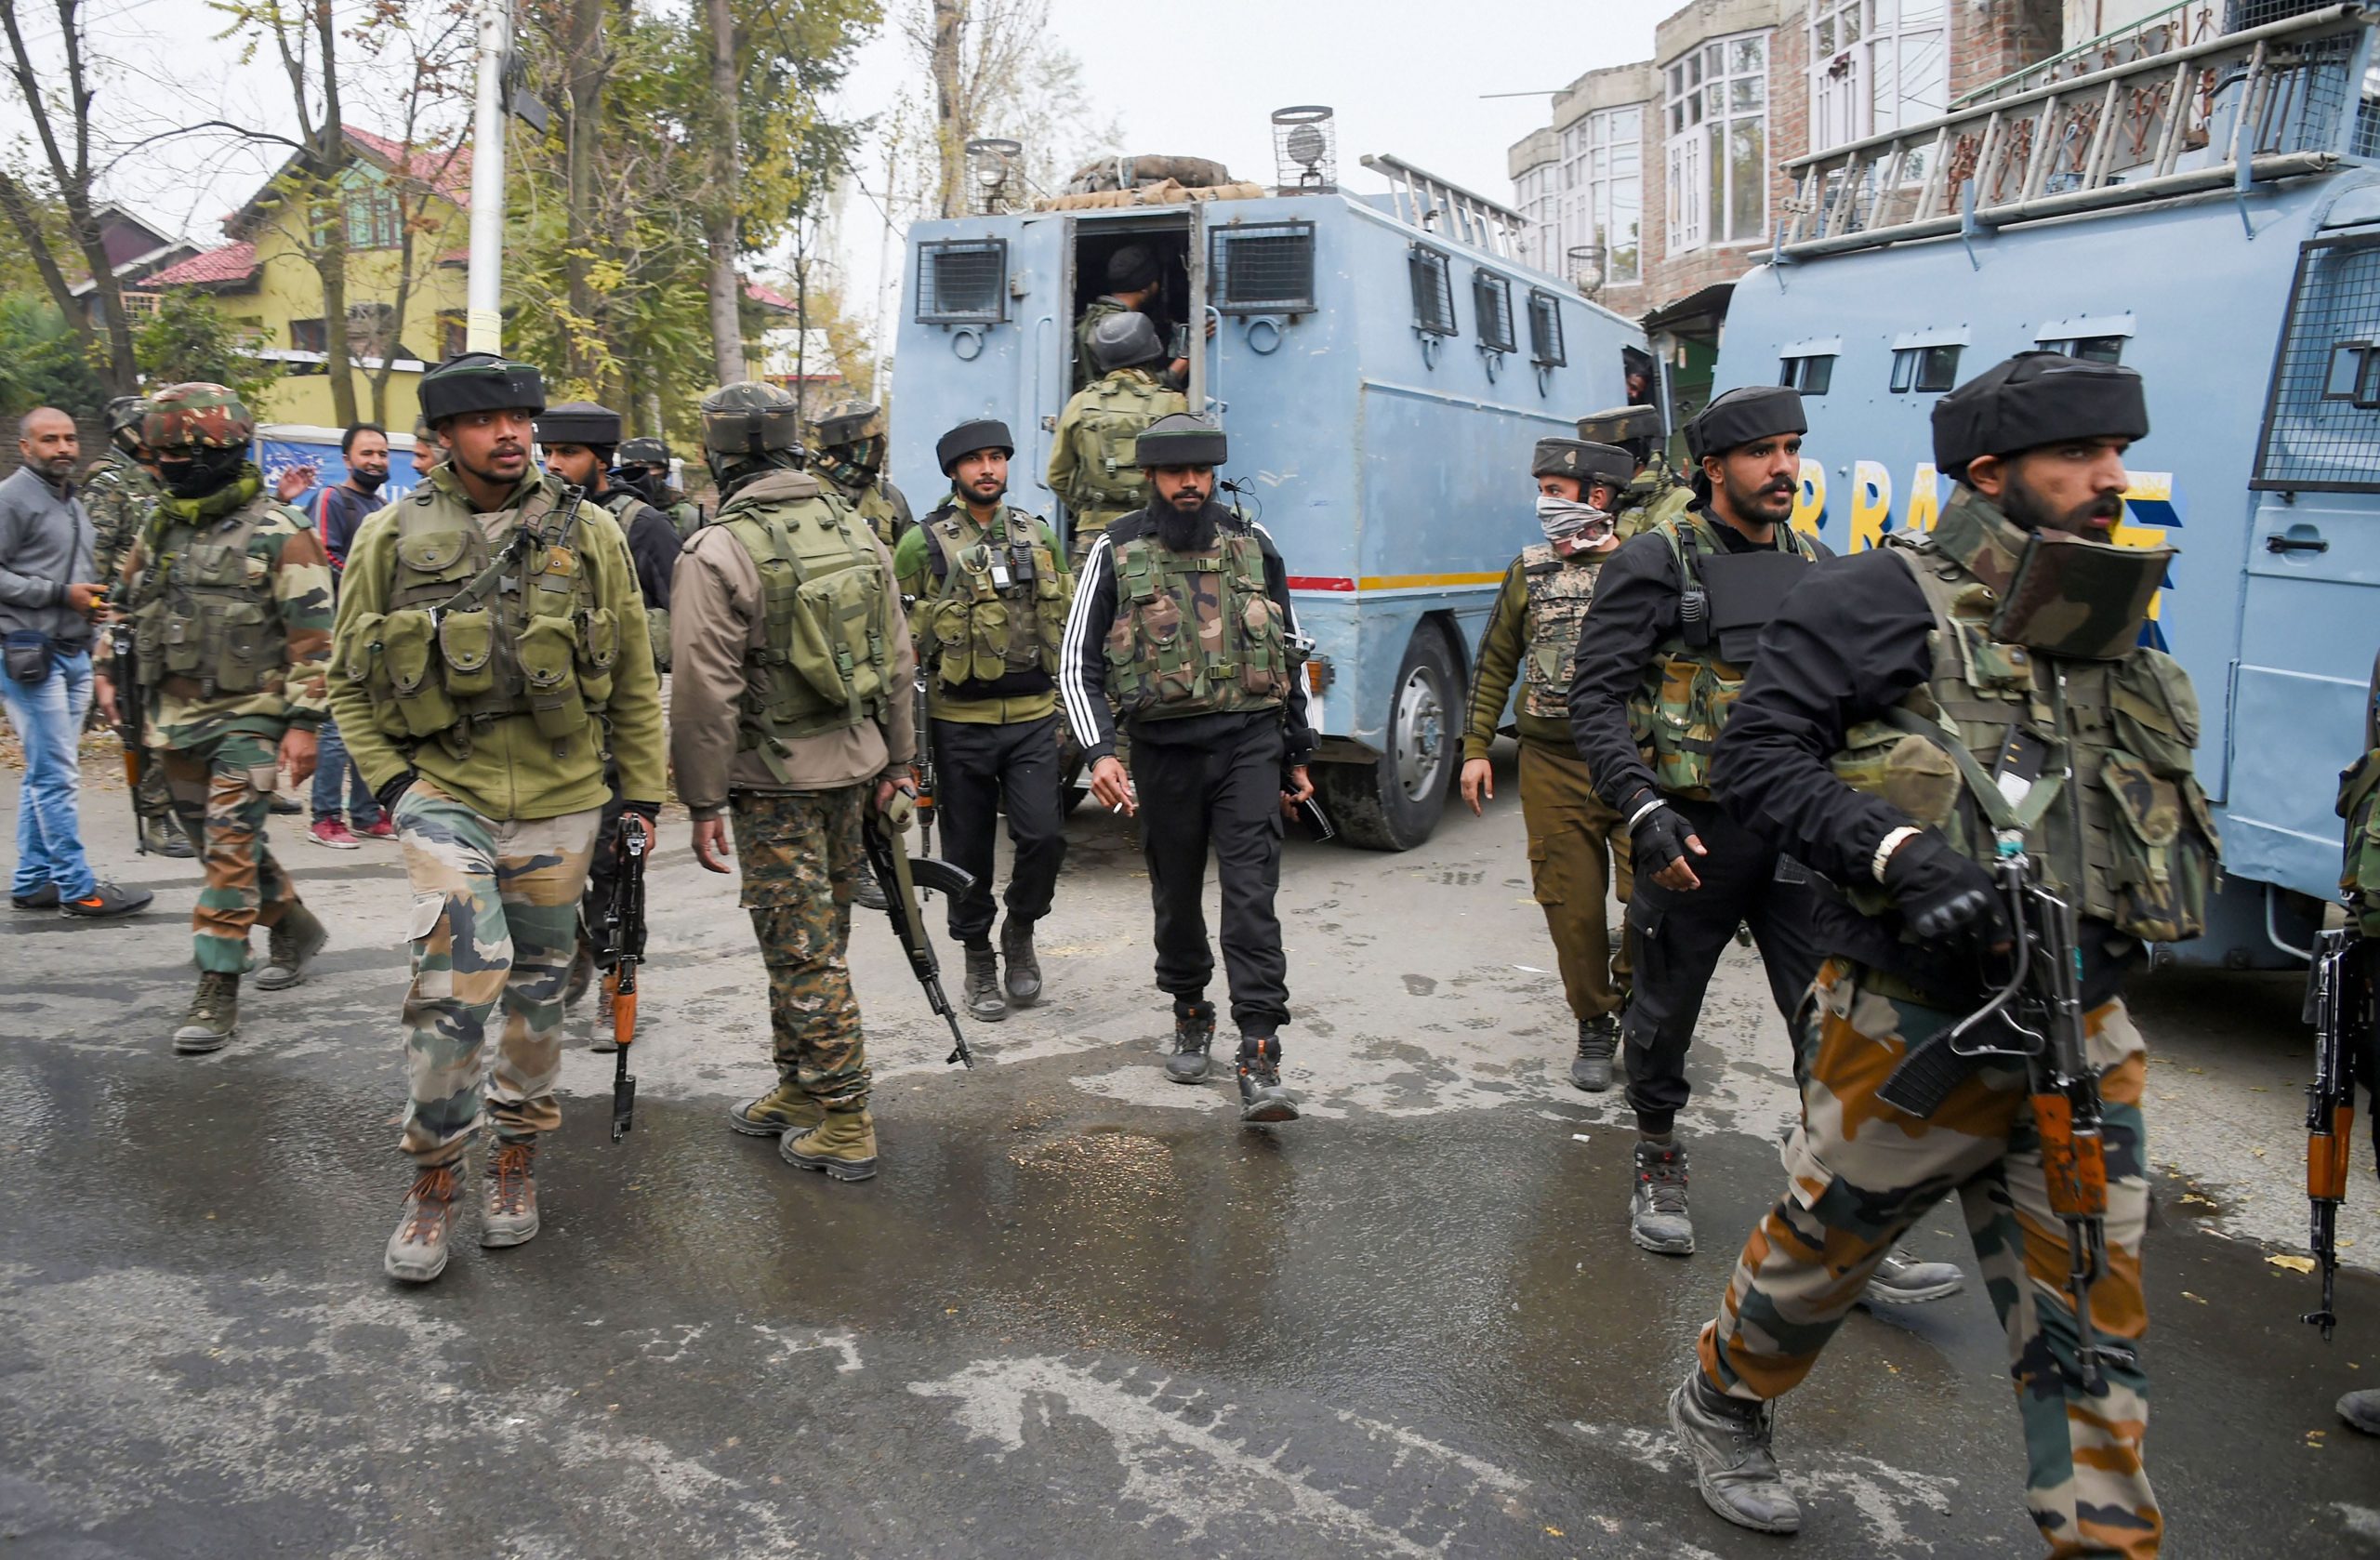 जम्मू कश्मीर में भारतीय सुरक्षाबलों ने तीन आतंकियों को ढेर किया, कैप्टन समेत 4 जवान शहीद